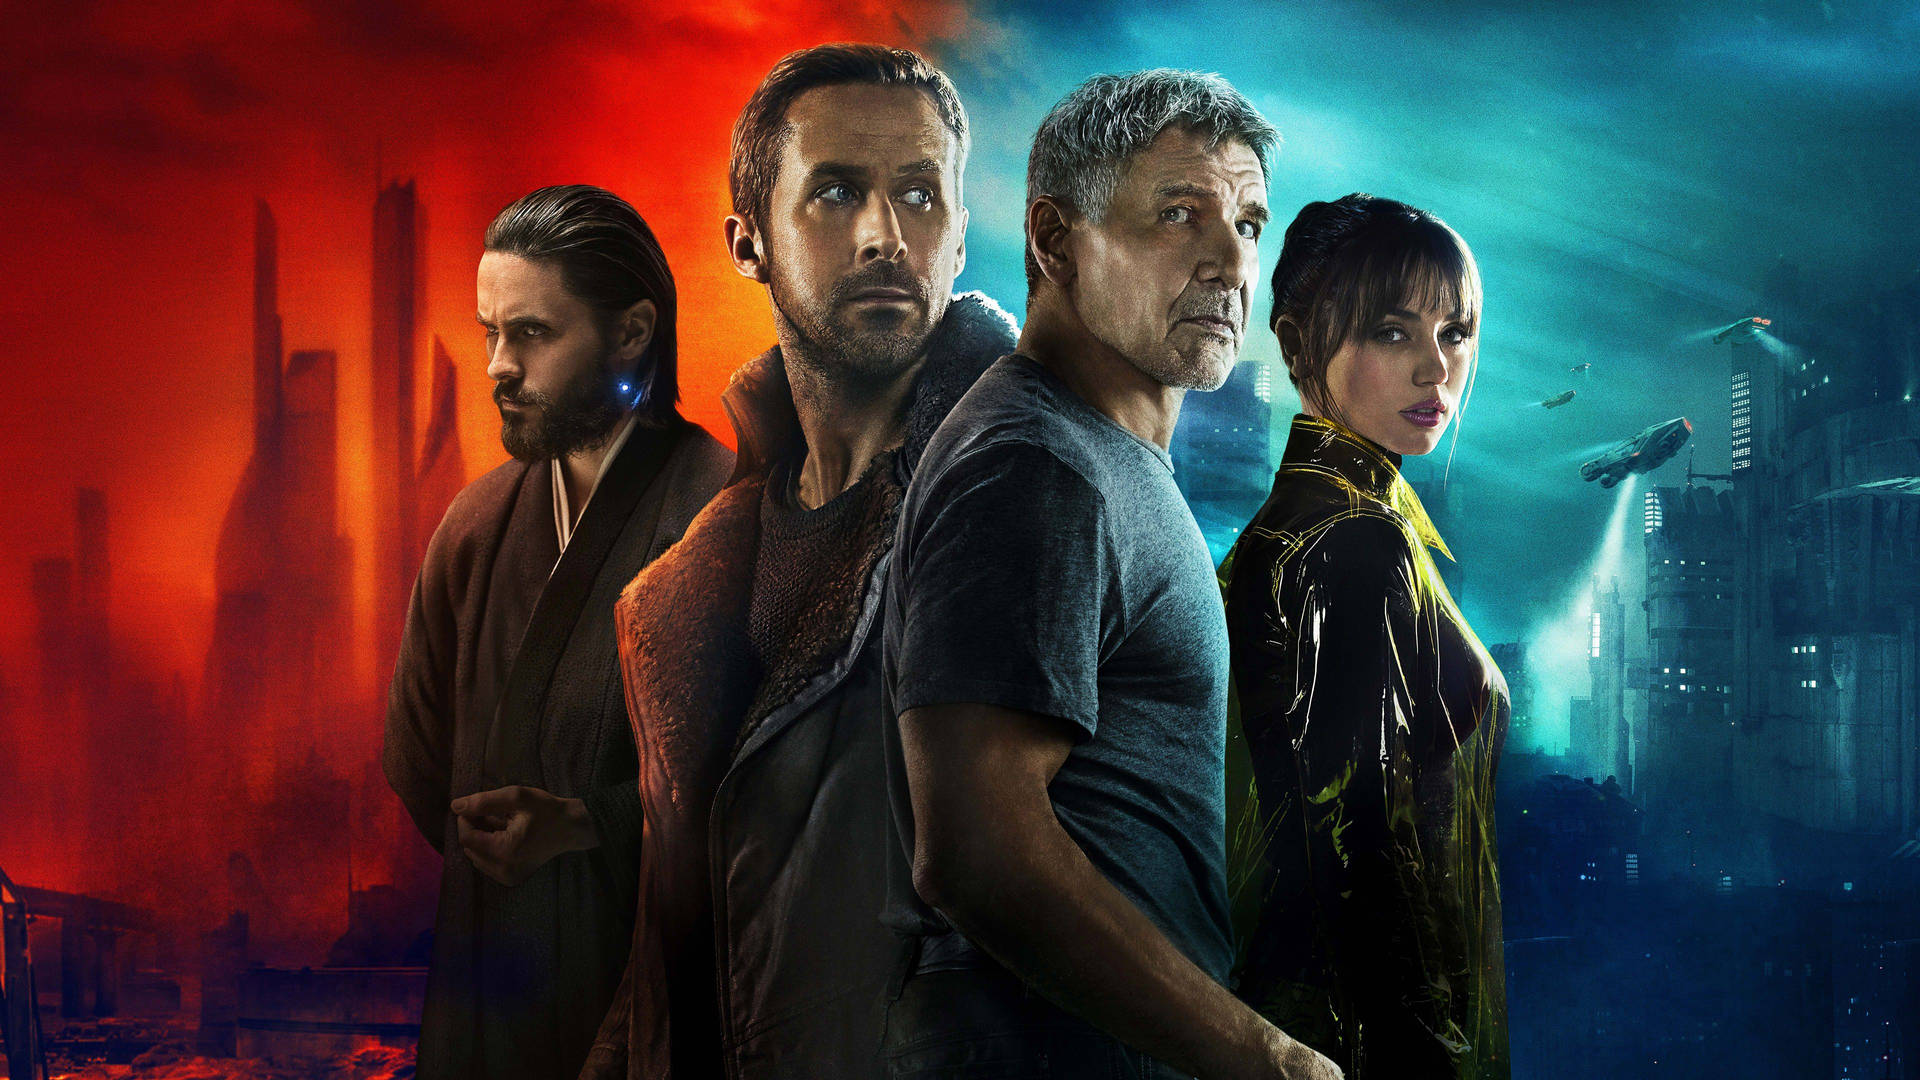 Blade Runner 2049 Digital Film Cover Background